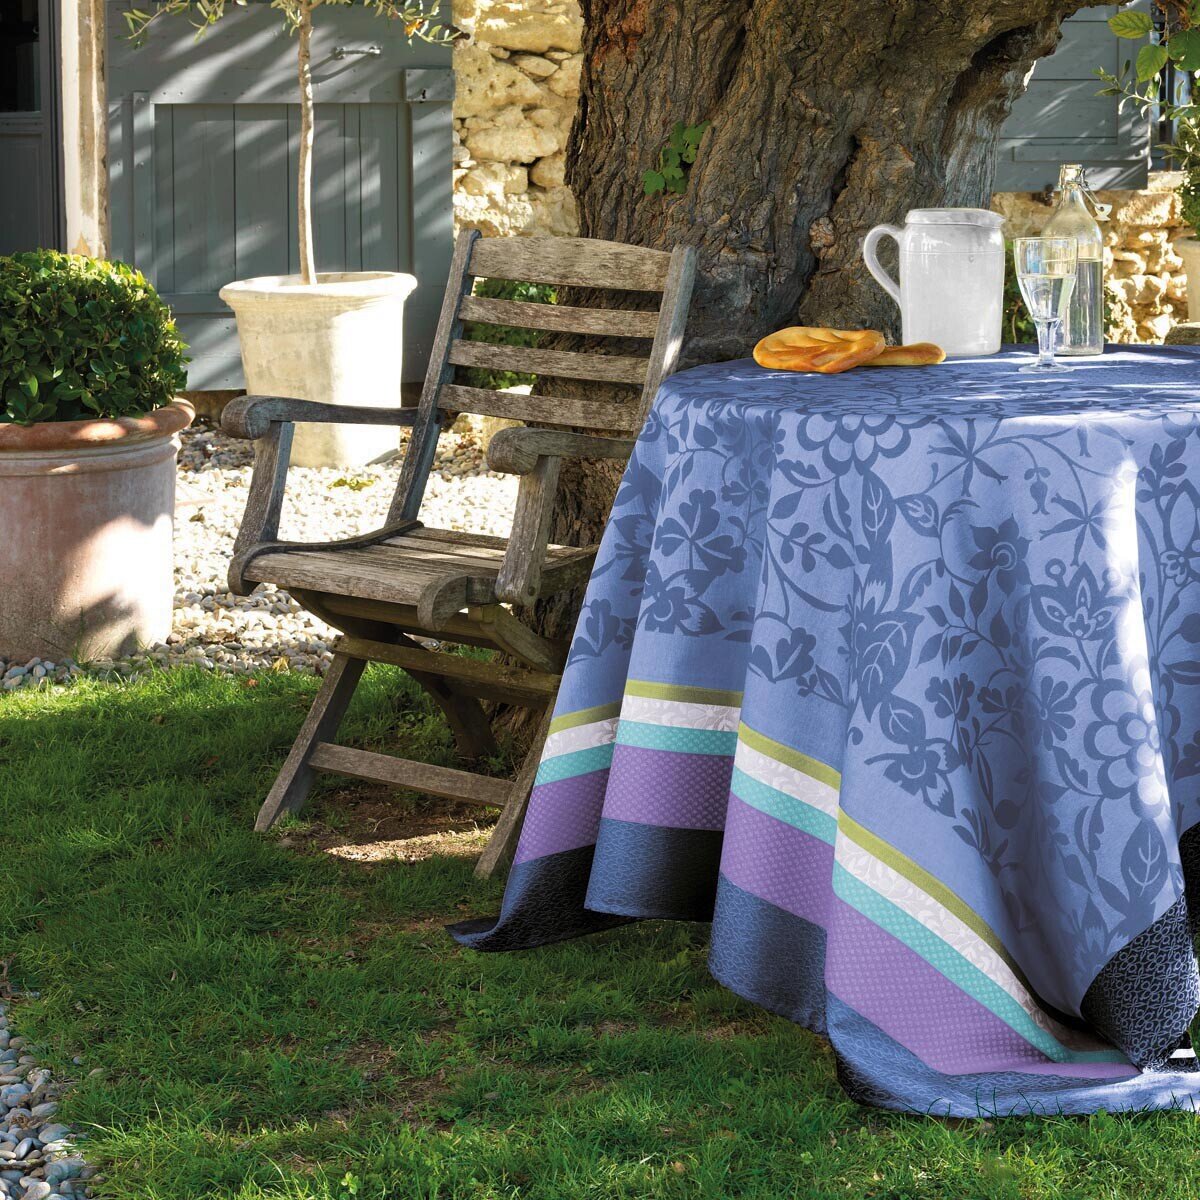 Le Jacquard Francais Provence Enduite Lavender blue Coated tablecloth 59 x 86 Inch